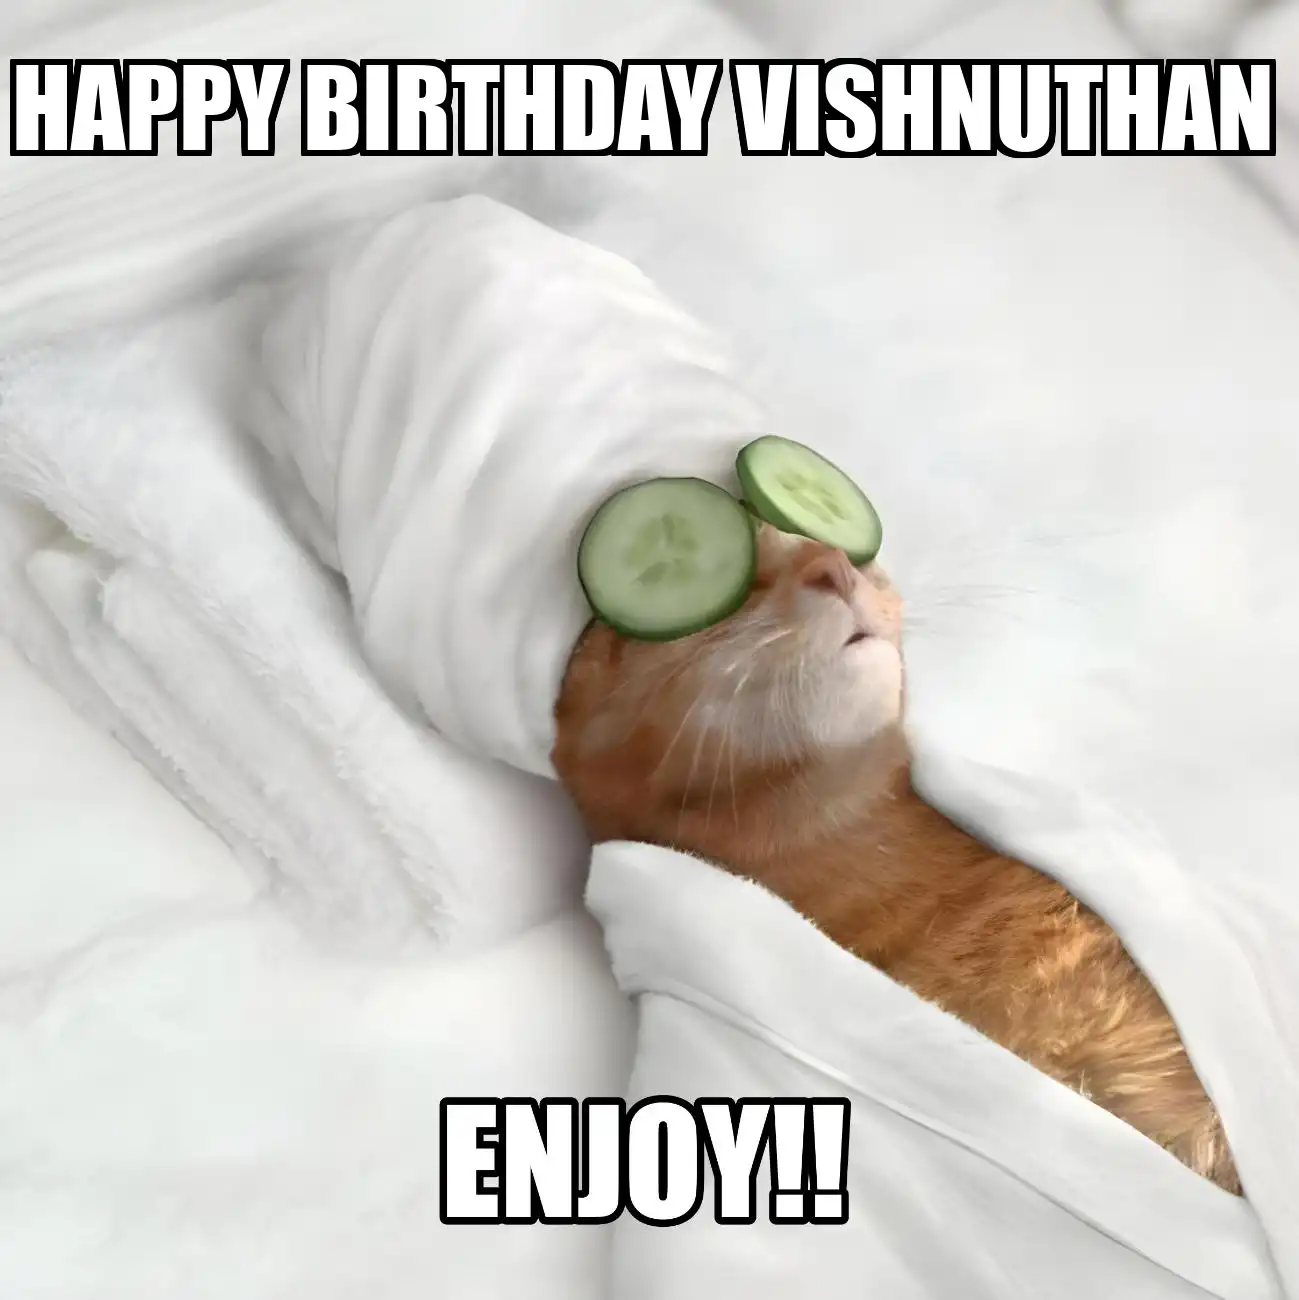 Happy Birthday Vishnuthan Enjoy Cat Meme